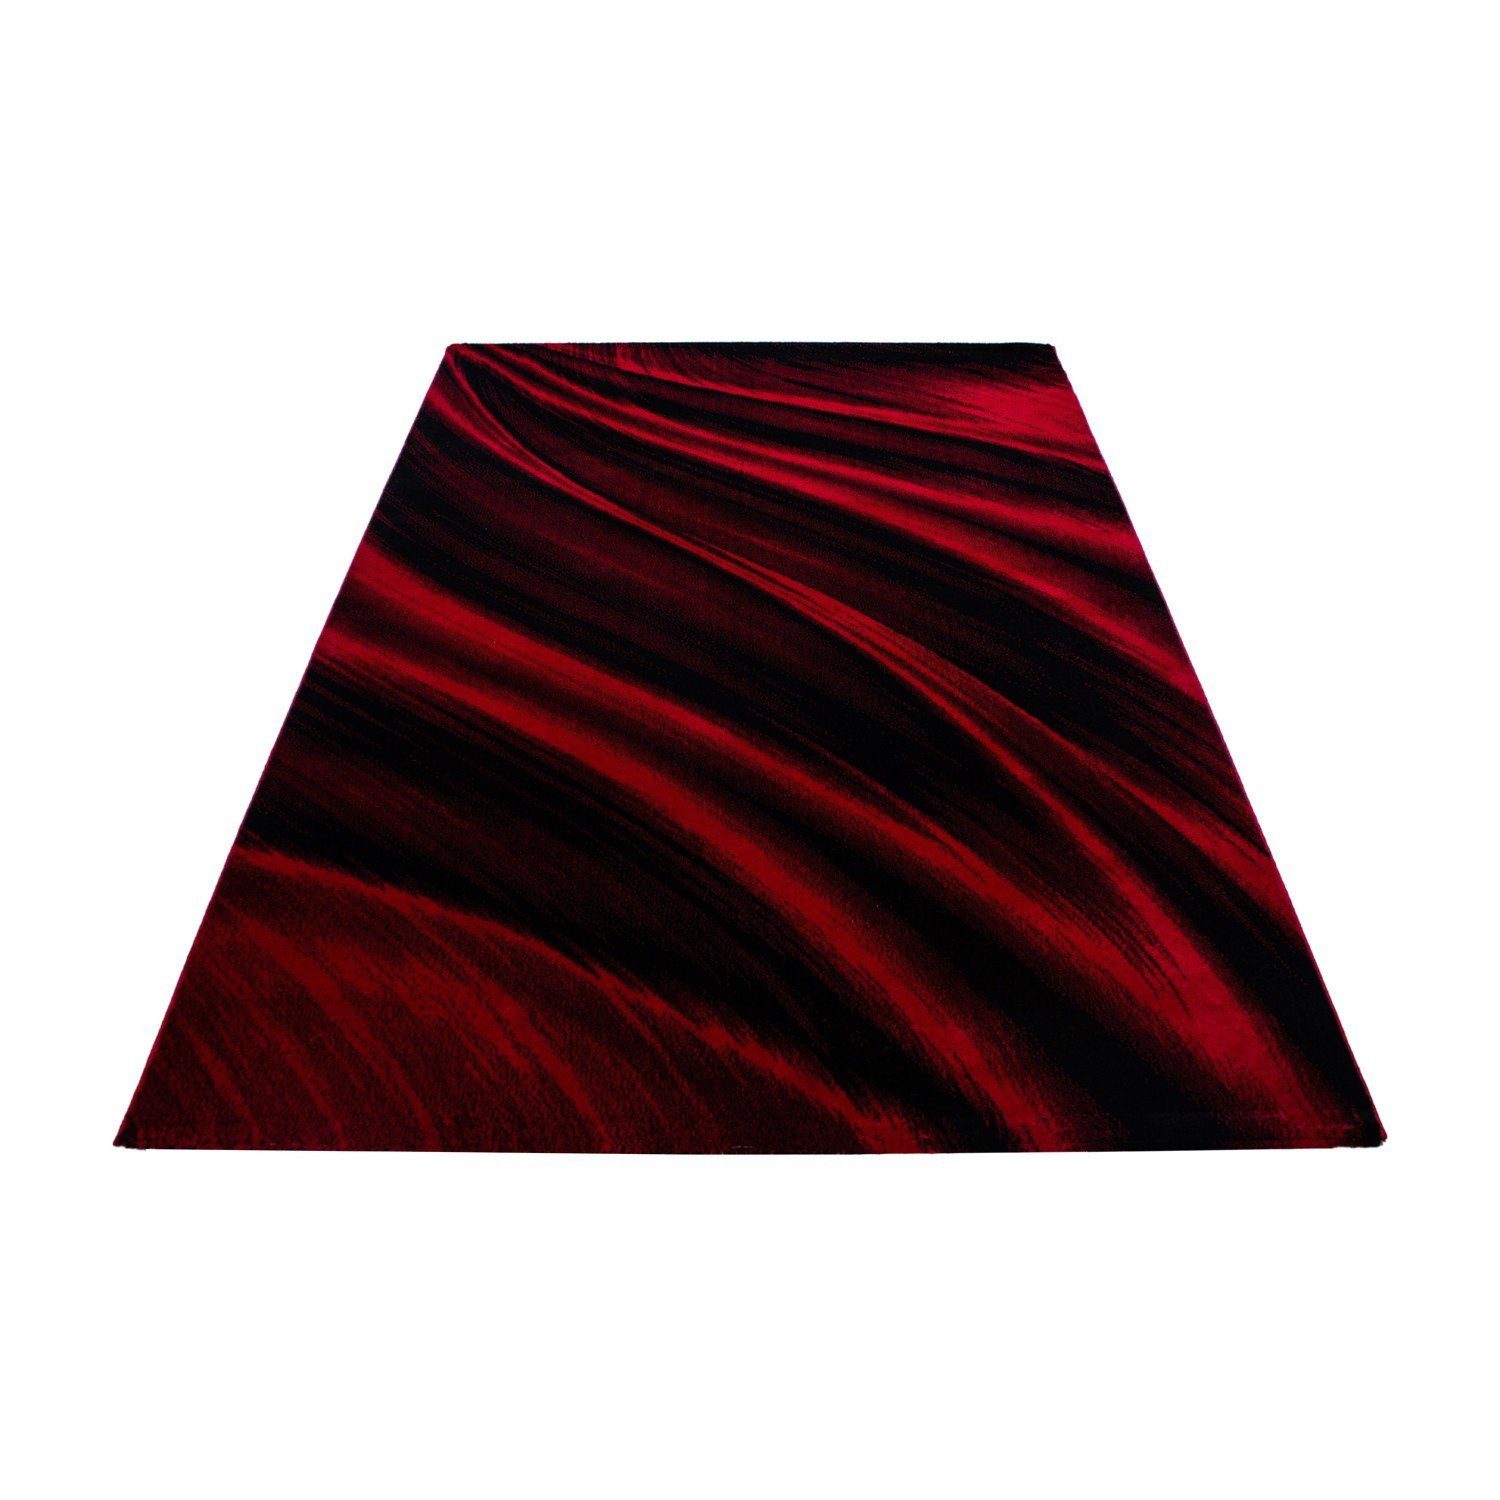 Flachflorteppich Rot modern deko, Wellenoptik Designteppich Miovani Kurzflorteppich